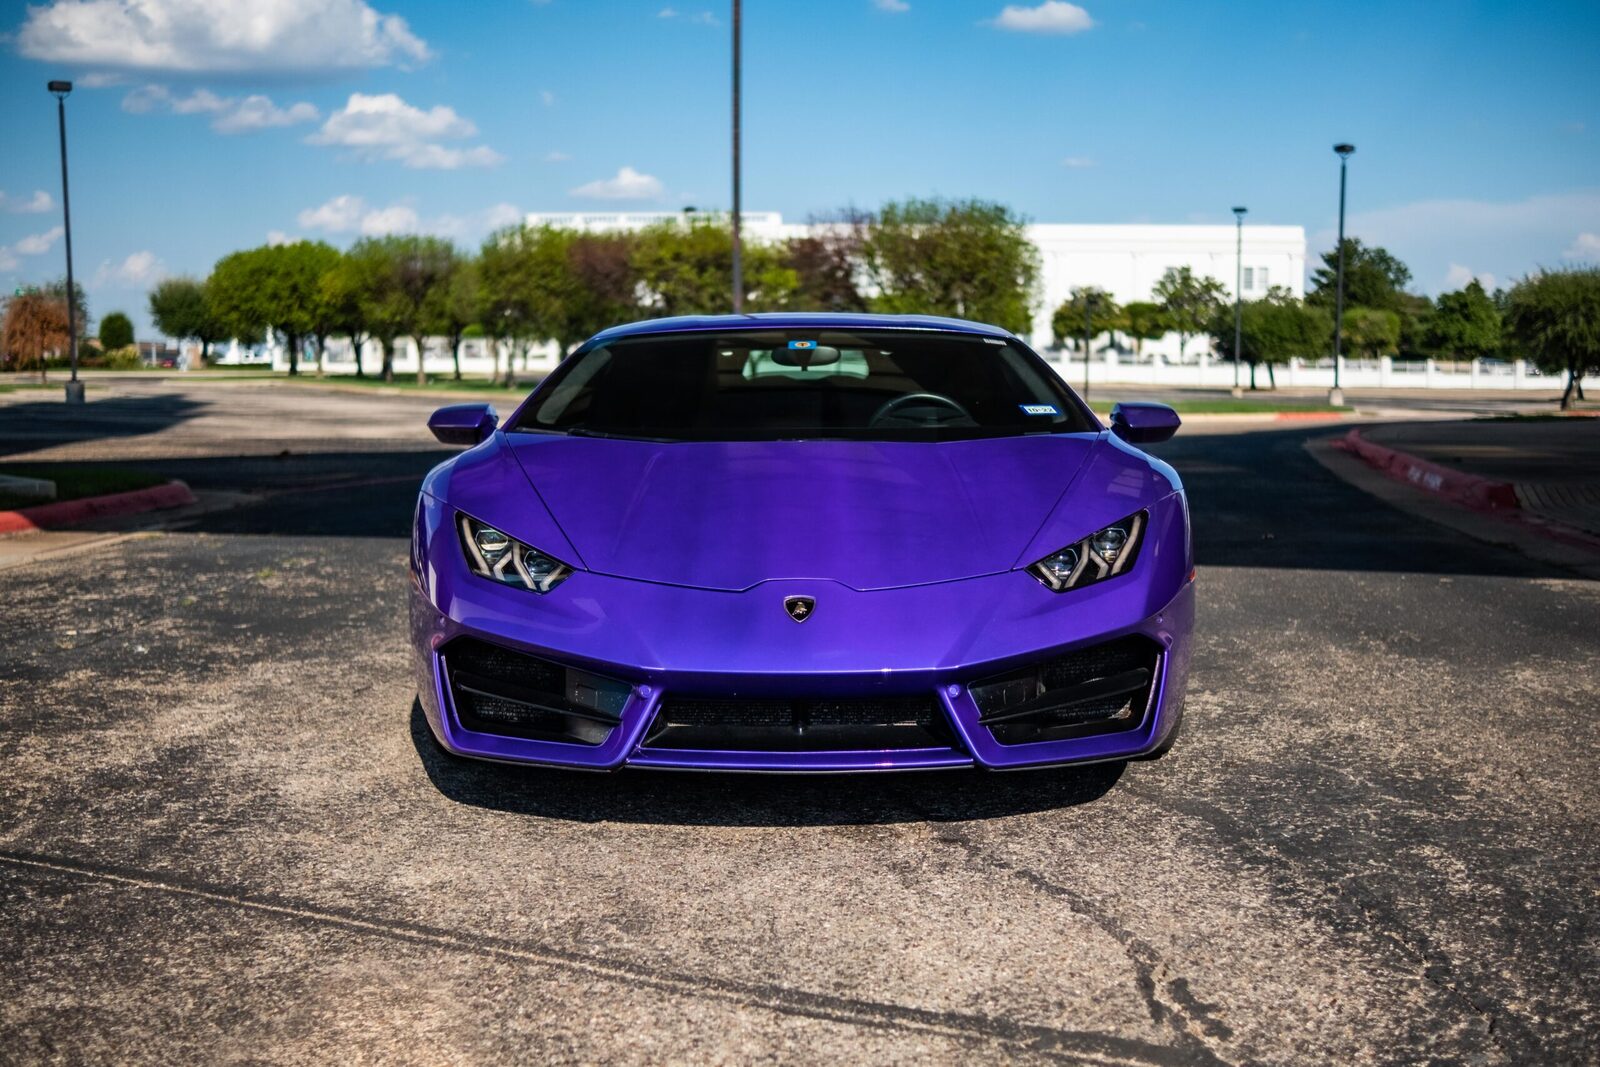 Rent an Exclusive Lamborghini in Dallas 